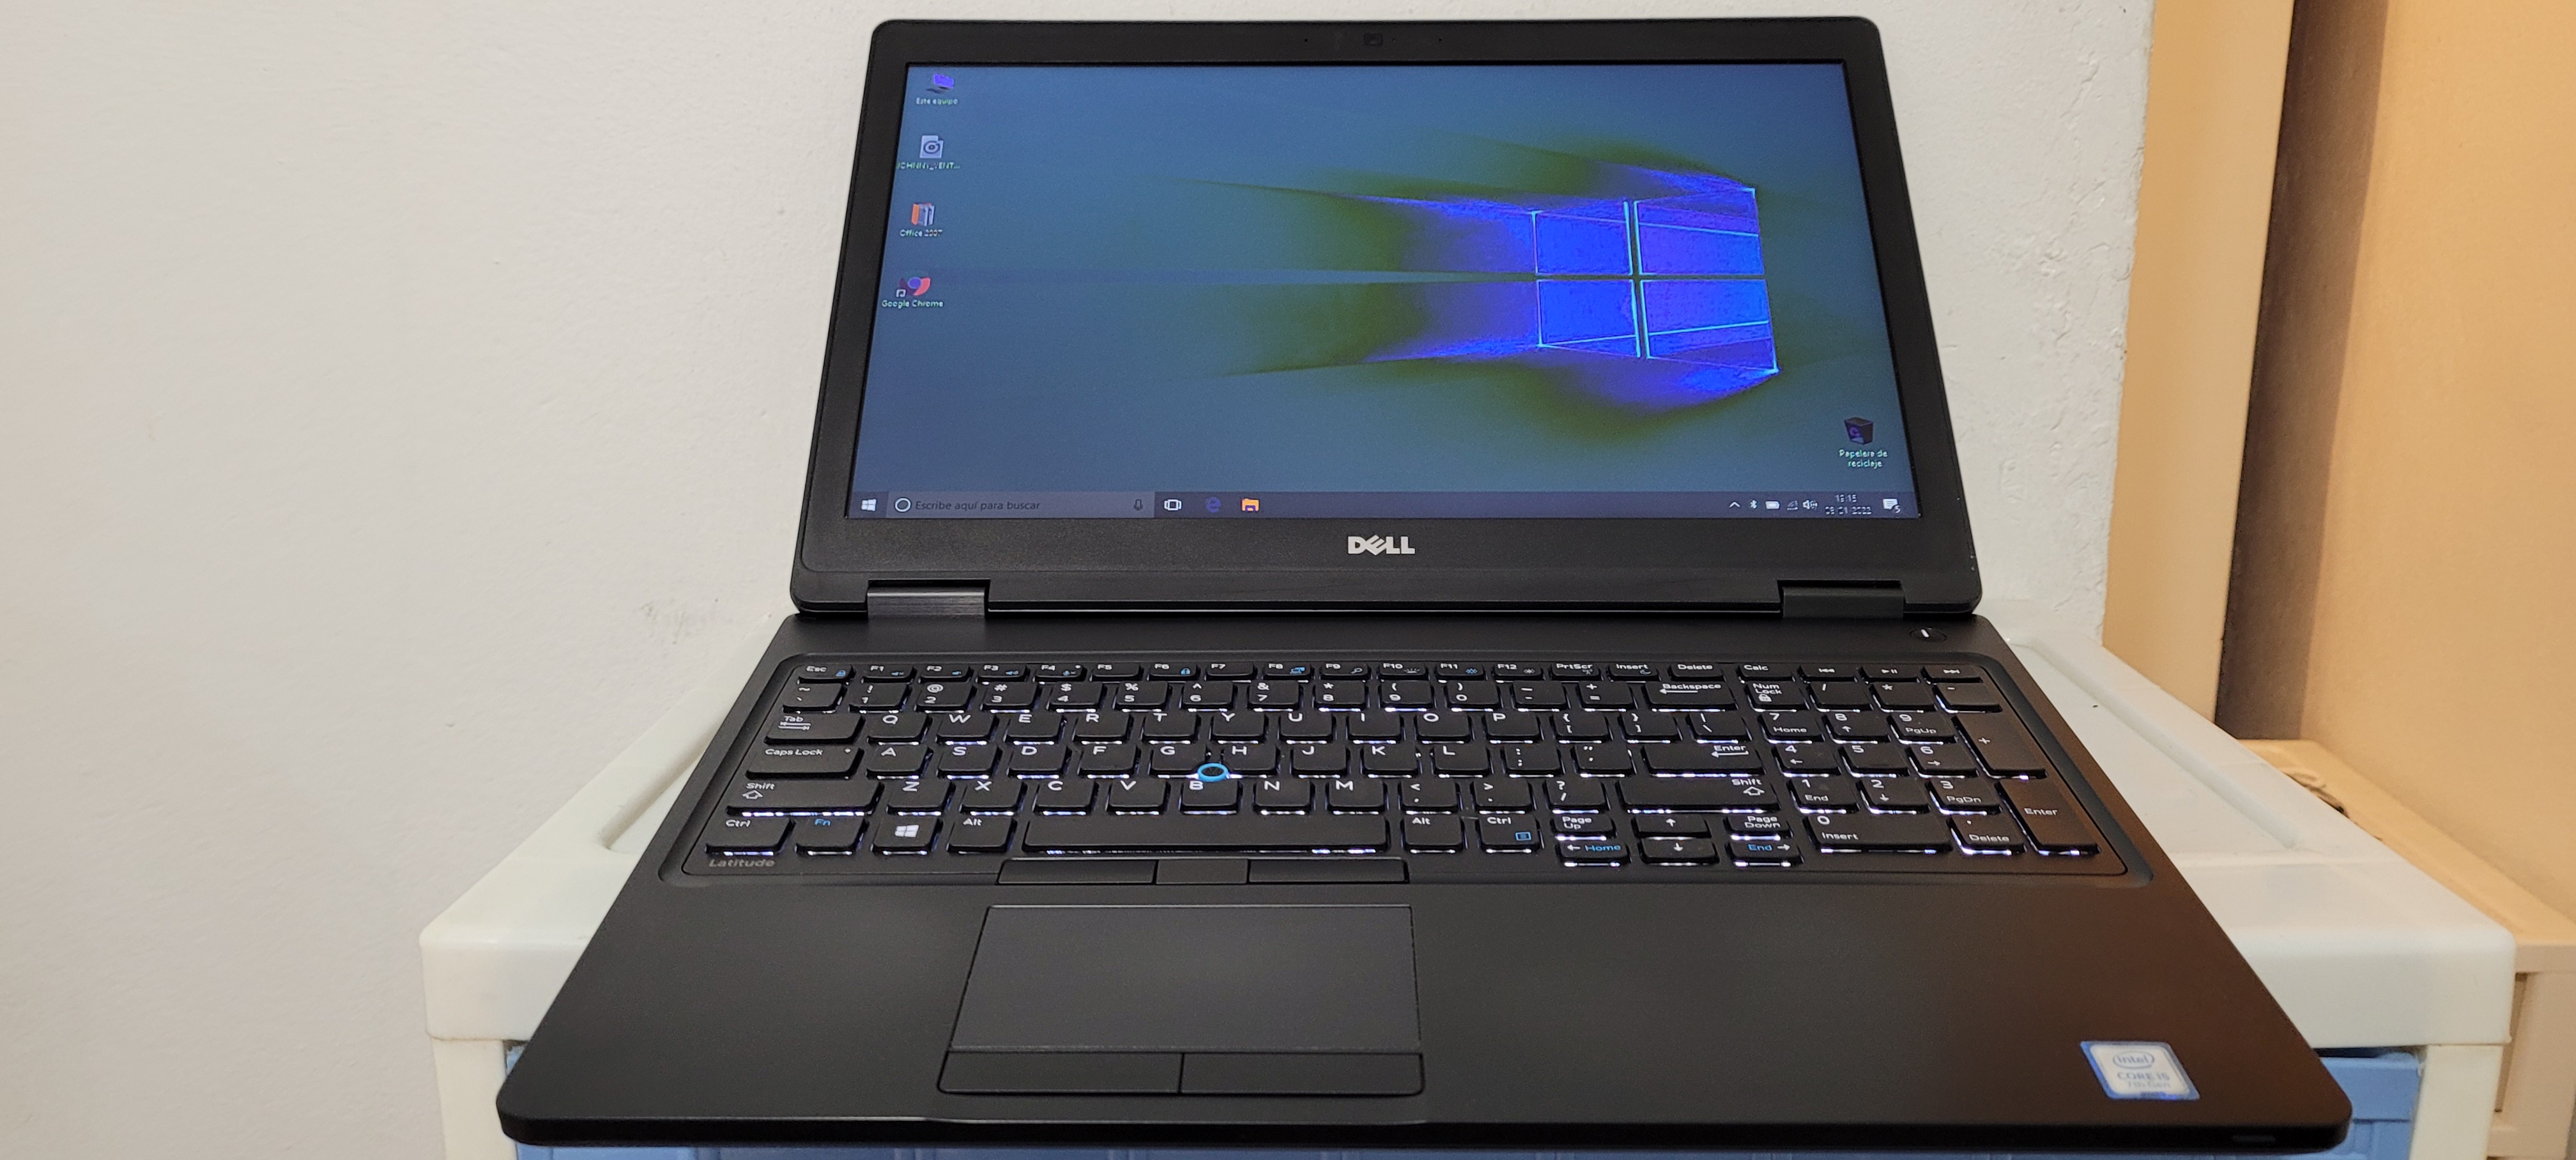 computadoras y laptops - Laptop Dell 5570 17 Pulg Core i7 6ta Ram 16gb Video intel Y Aty Radeon R7 2gb 0